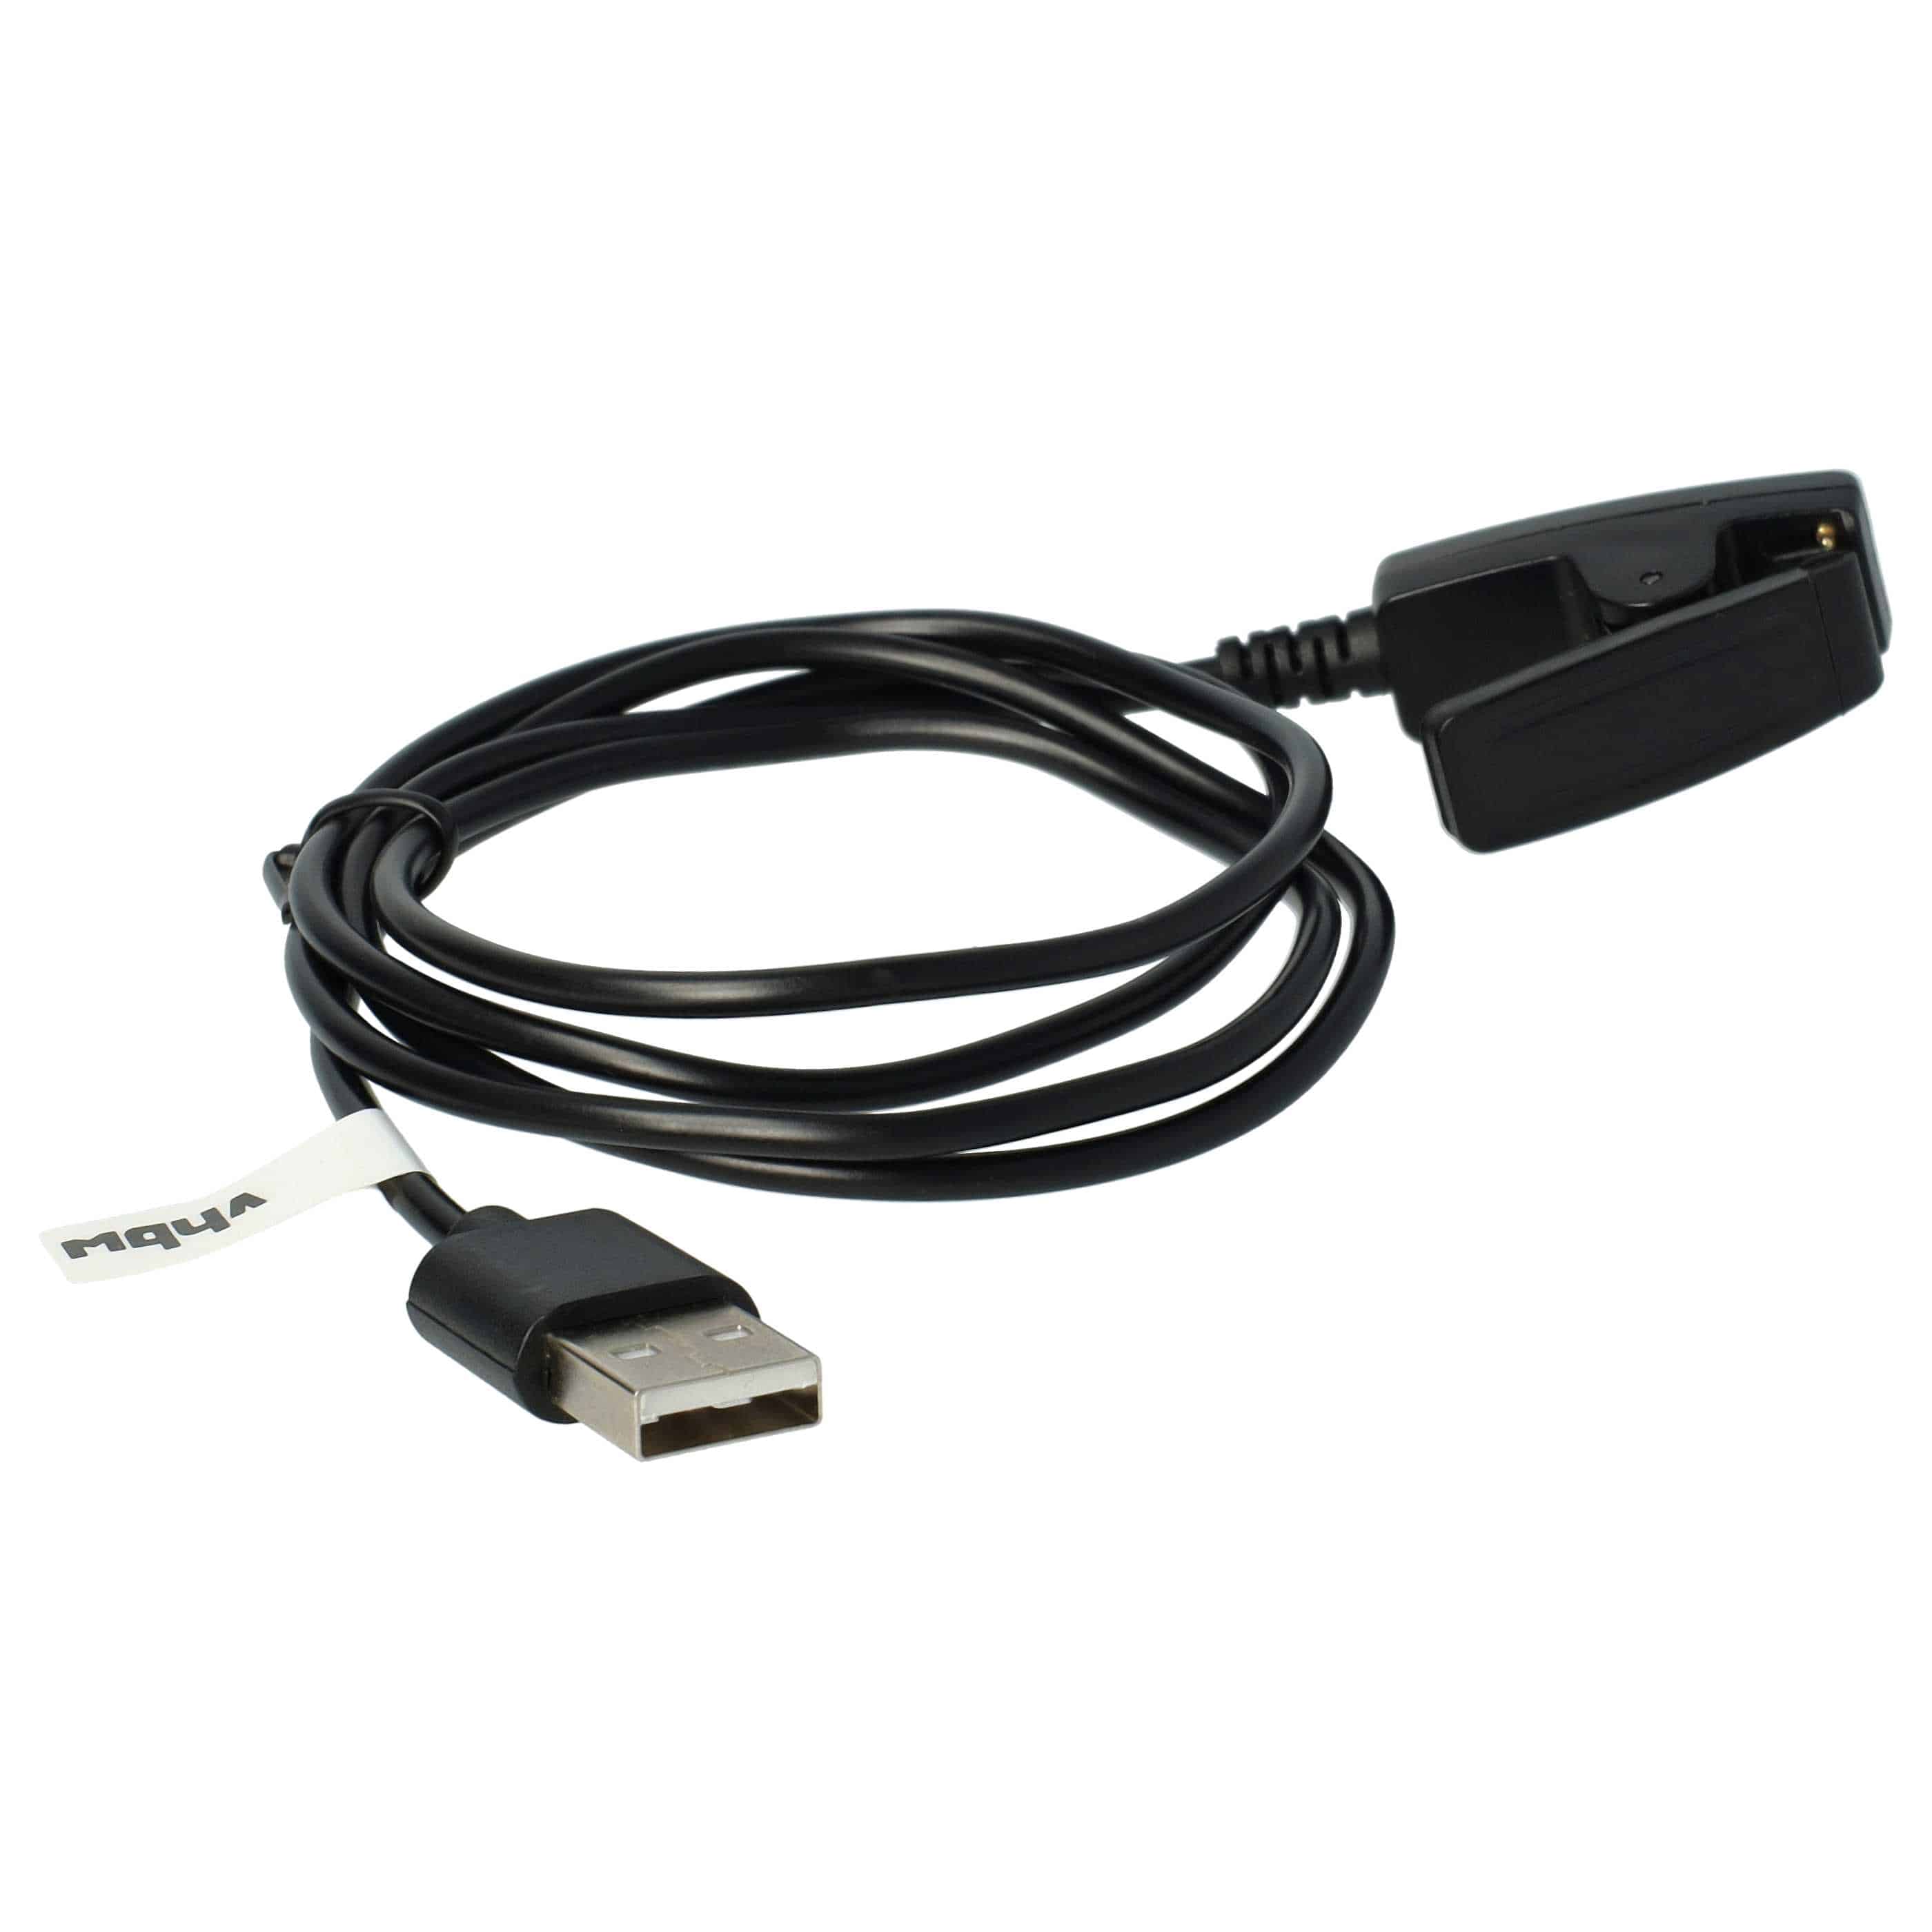 Cable de carga USB reemplaza Garmin 010-11029-19 para smartwatch Garmin - negro 100 cm